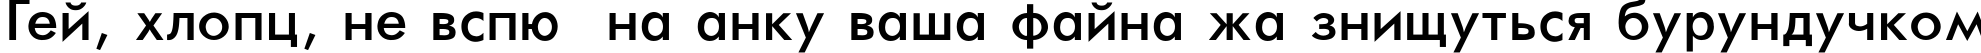 Пример написания шрифтом Futura-Normal текста на украинском